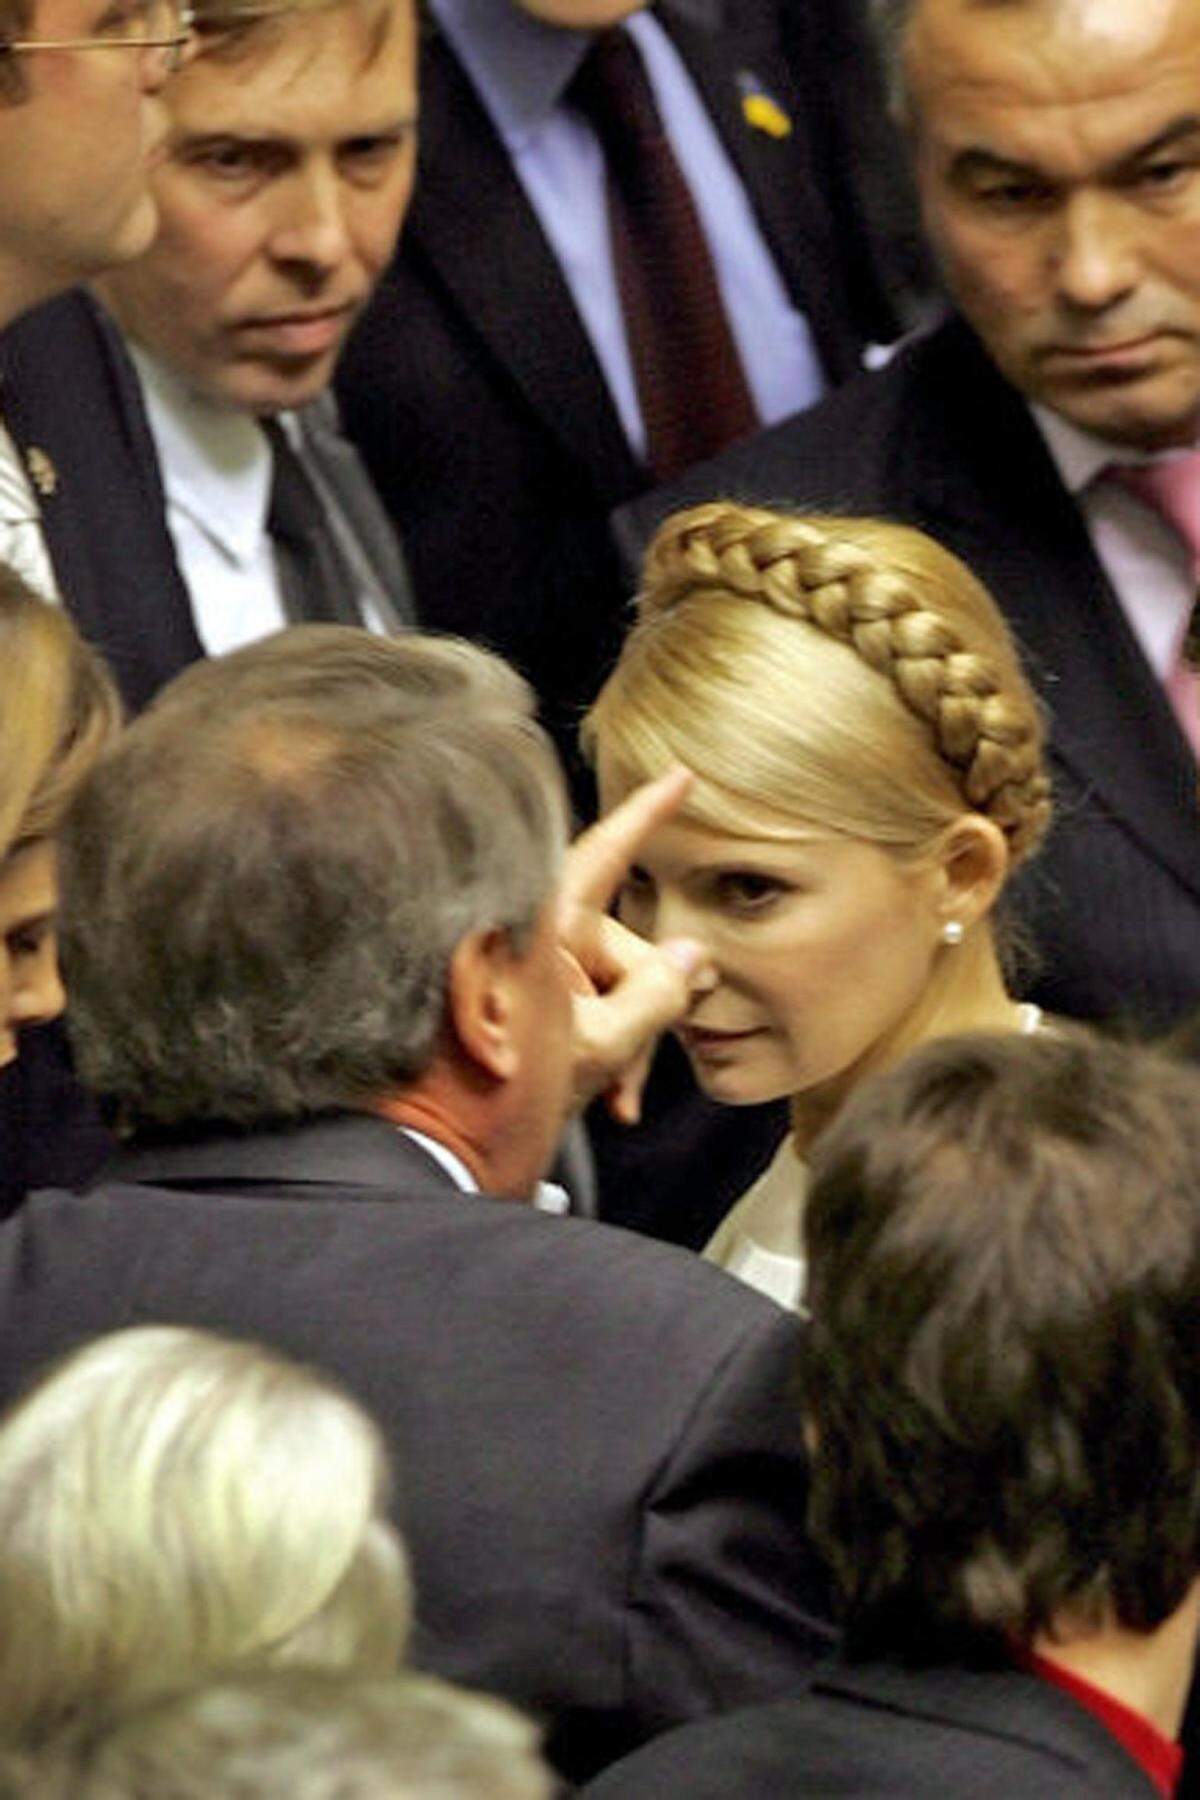 Immer wieder wurde Timoschenko mit Vorwürfen des Amtsmissbrauchs konfrontiert. Schließlich wurde sie angeklagt und am 5. August 2011 in Untersuchungshaft genommen. Am 27. September beantragte die Staatsanwaltschaft eine Strafe von sieben Jahren, die Verteidigung verlangte einen Freispruch. Am 11. Oktober 2011 wurde Timoschenko schuldig gesprochen.